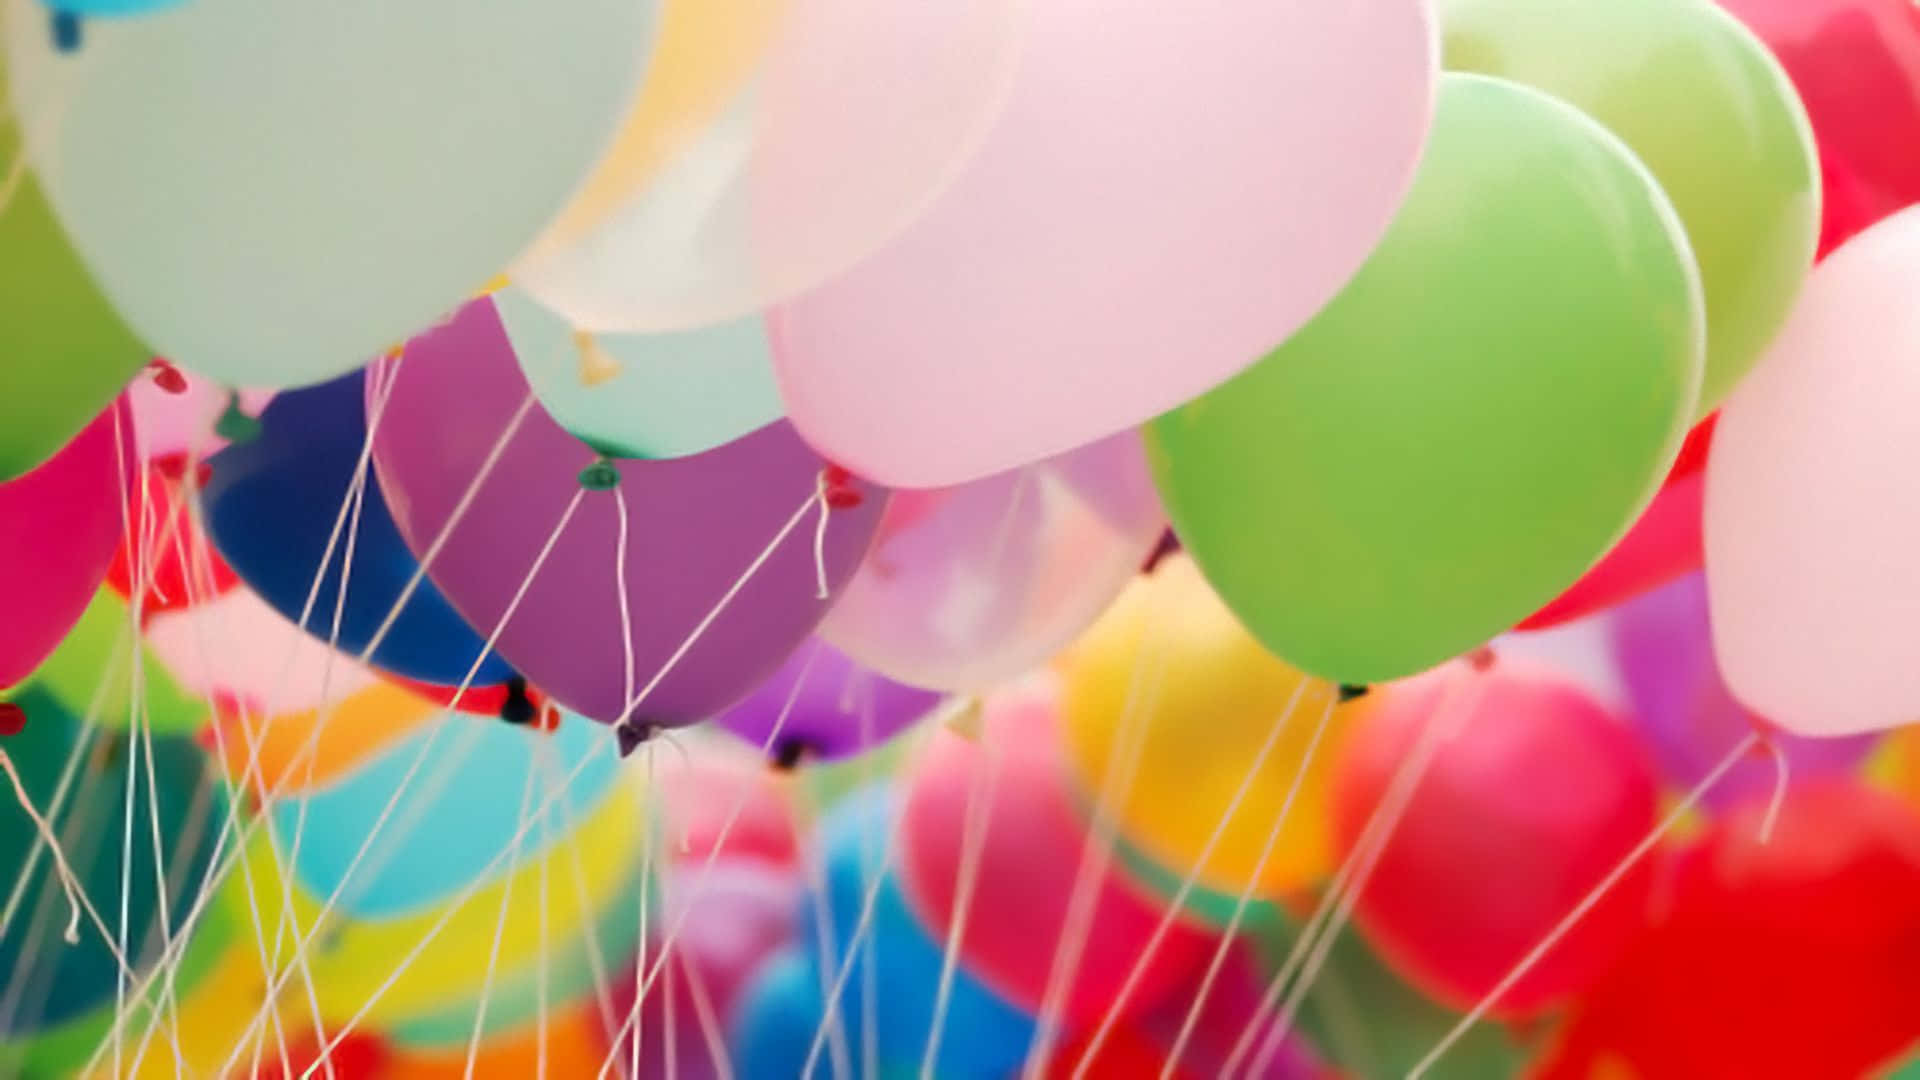 Hintergrundmit Luftballons, Luftballons An Schnüren In Verschiedenen Farben.